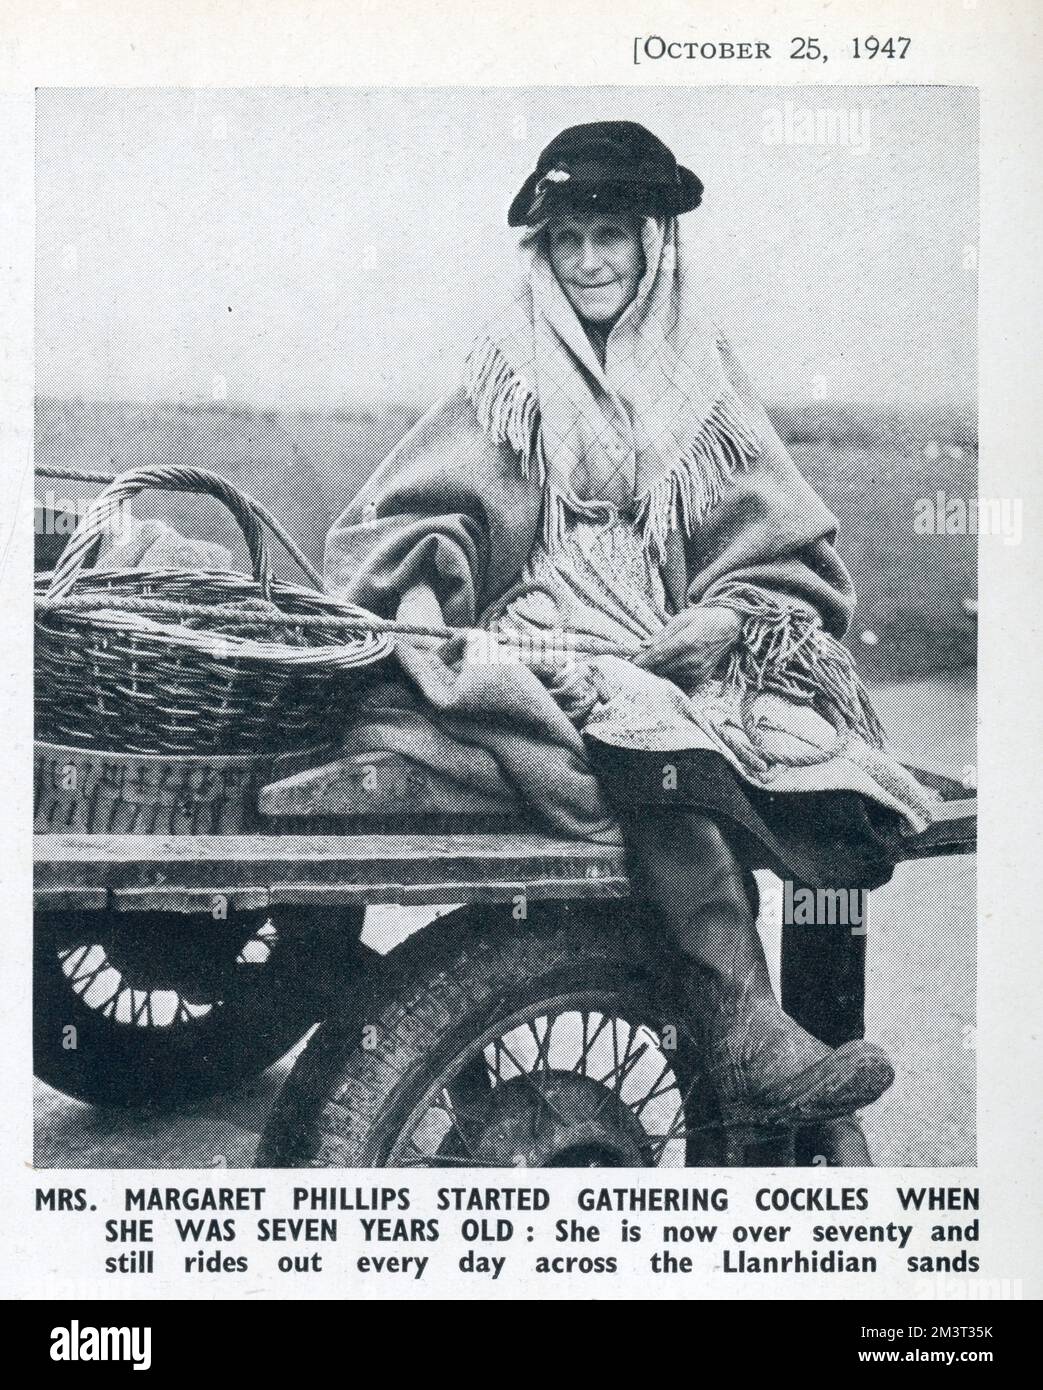 Die Cockle Women of Gower: Eine antike Industrie auf dem Llanrhidian Sands, Südwales. Frau Margaret Philips begann mit sieben Jahren, Schwänze zu sammeln: Zum Zeitpunkt dieses Fotos war sie über siebzig und fuhr noch jeden Tag durch den Llanrhidian Sands. Stockfoto